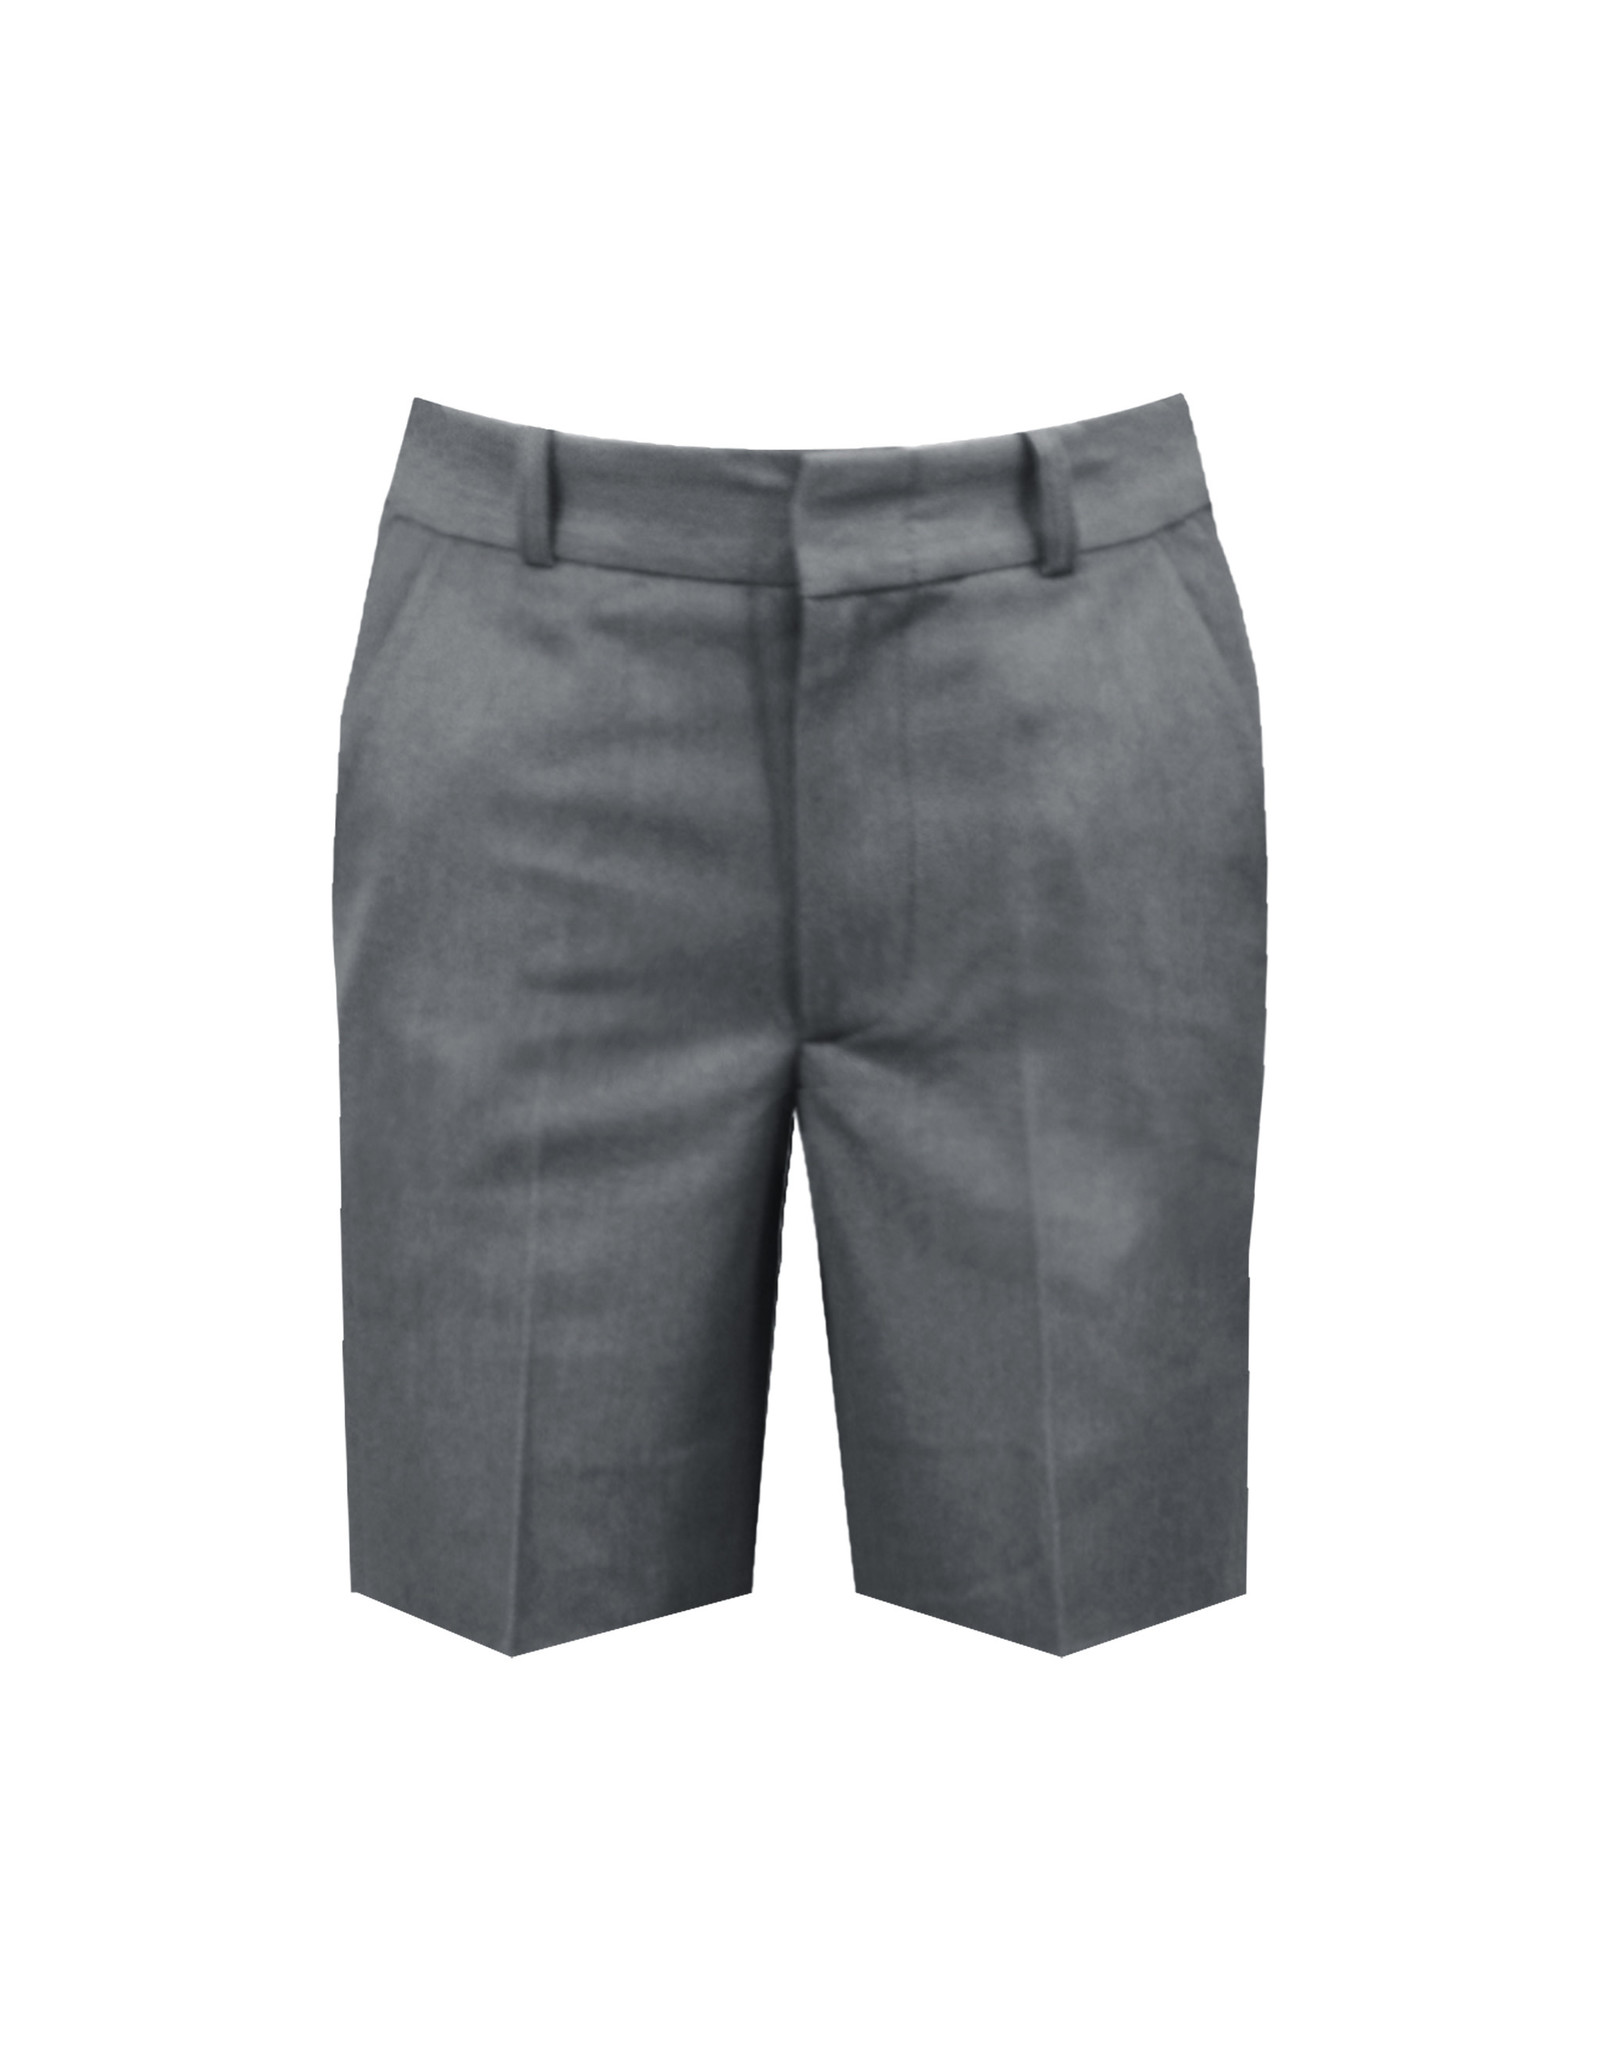 Cambridge Dress Shorts - Adjustable Waist - Boys